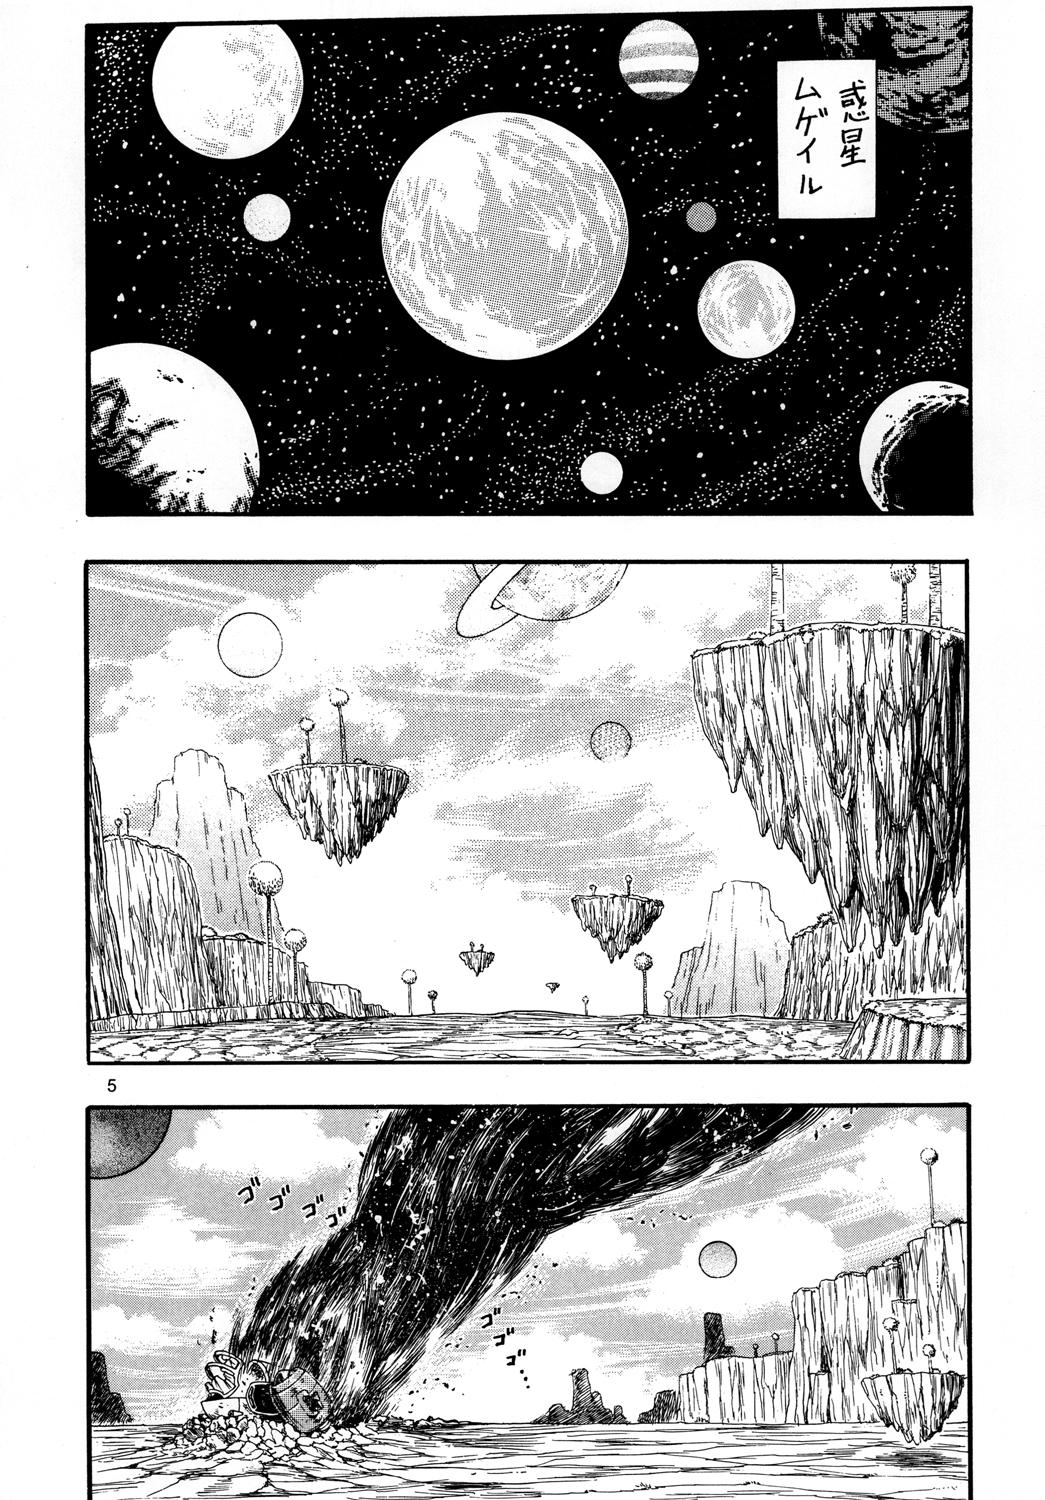 Tites Space Nostalgia 2 Peitos - Page 4